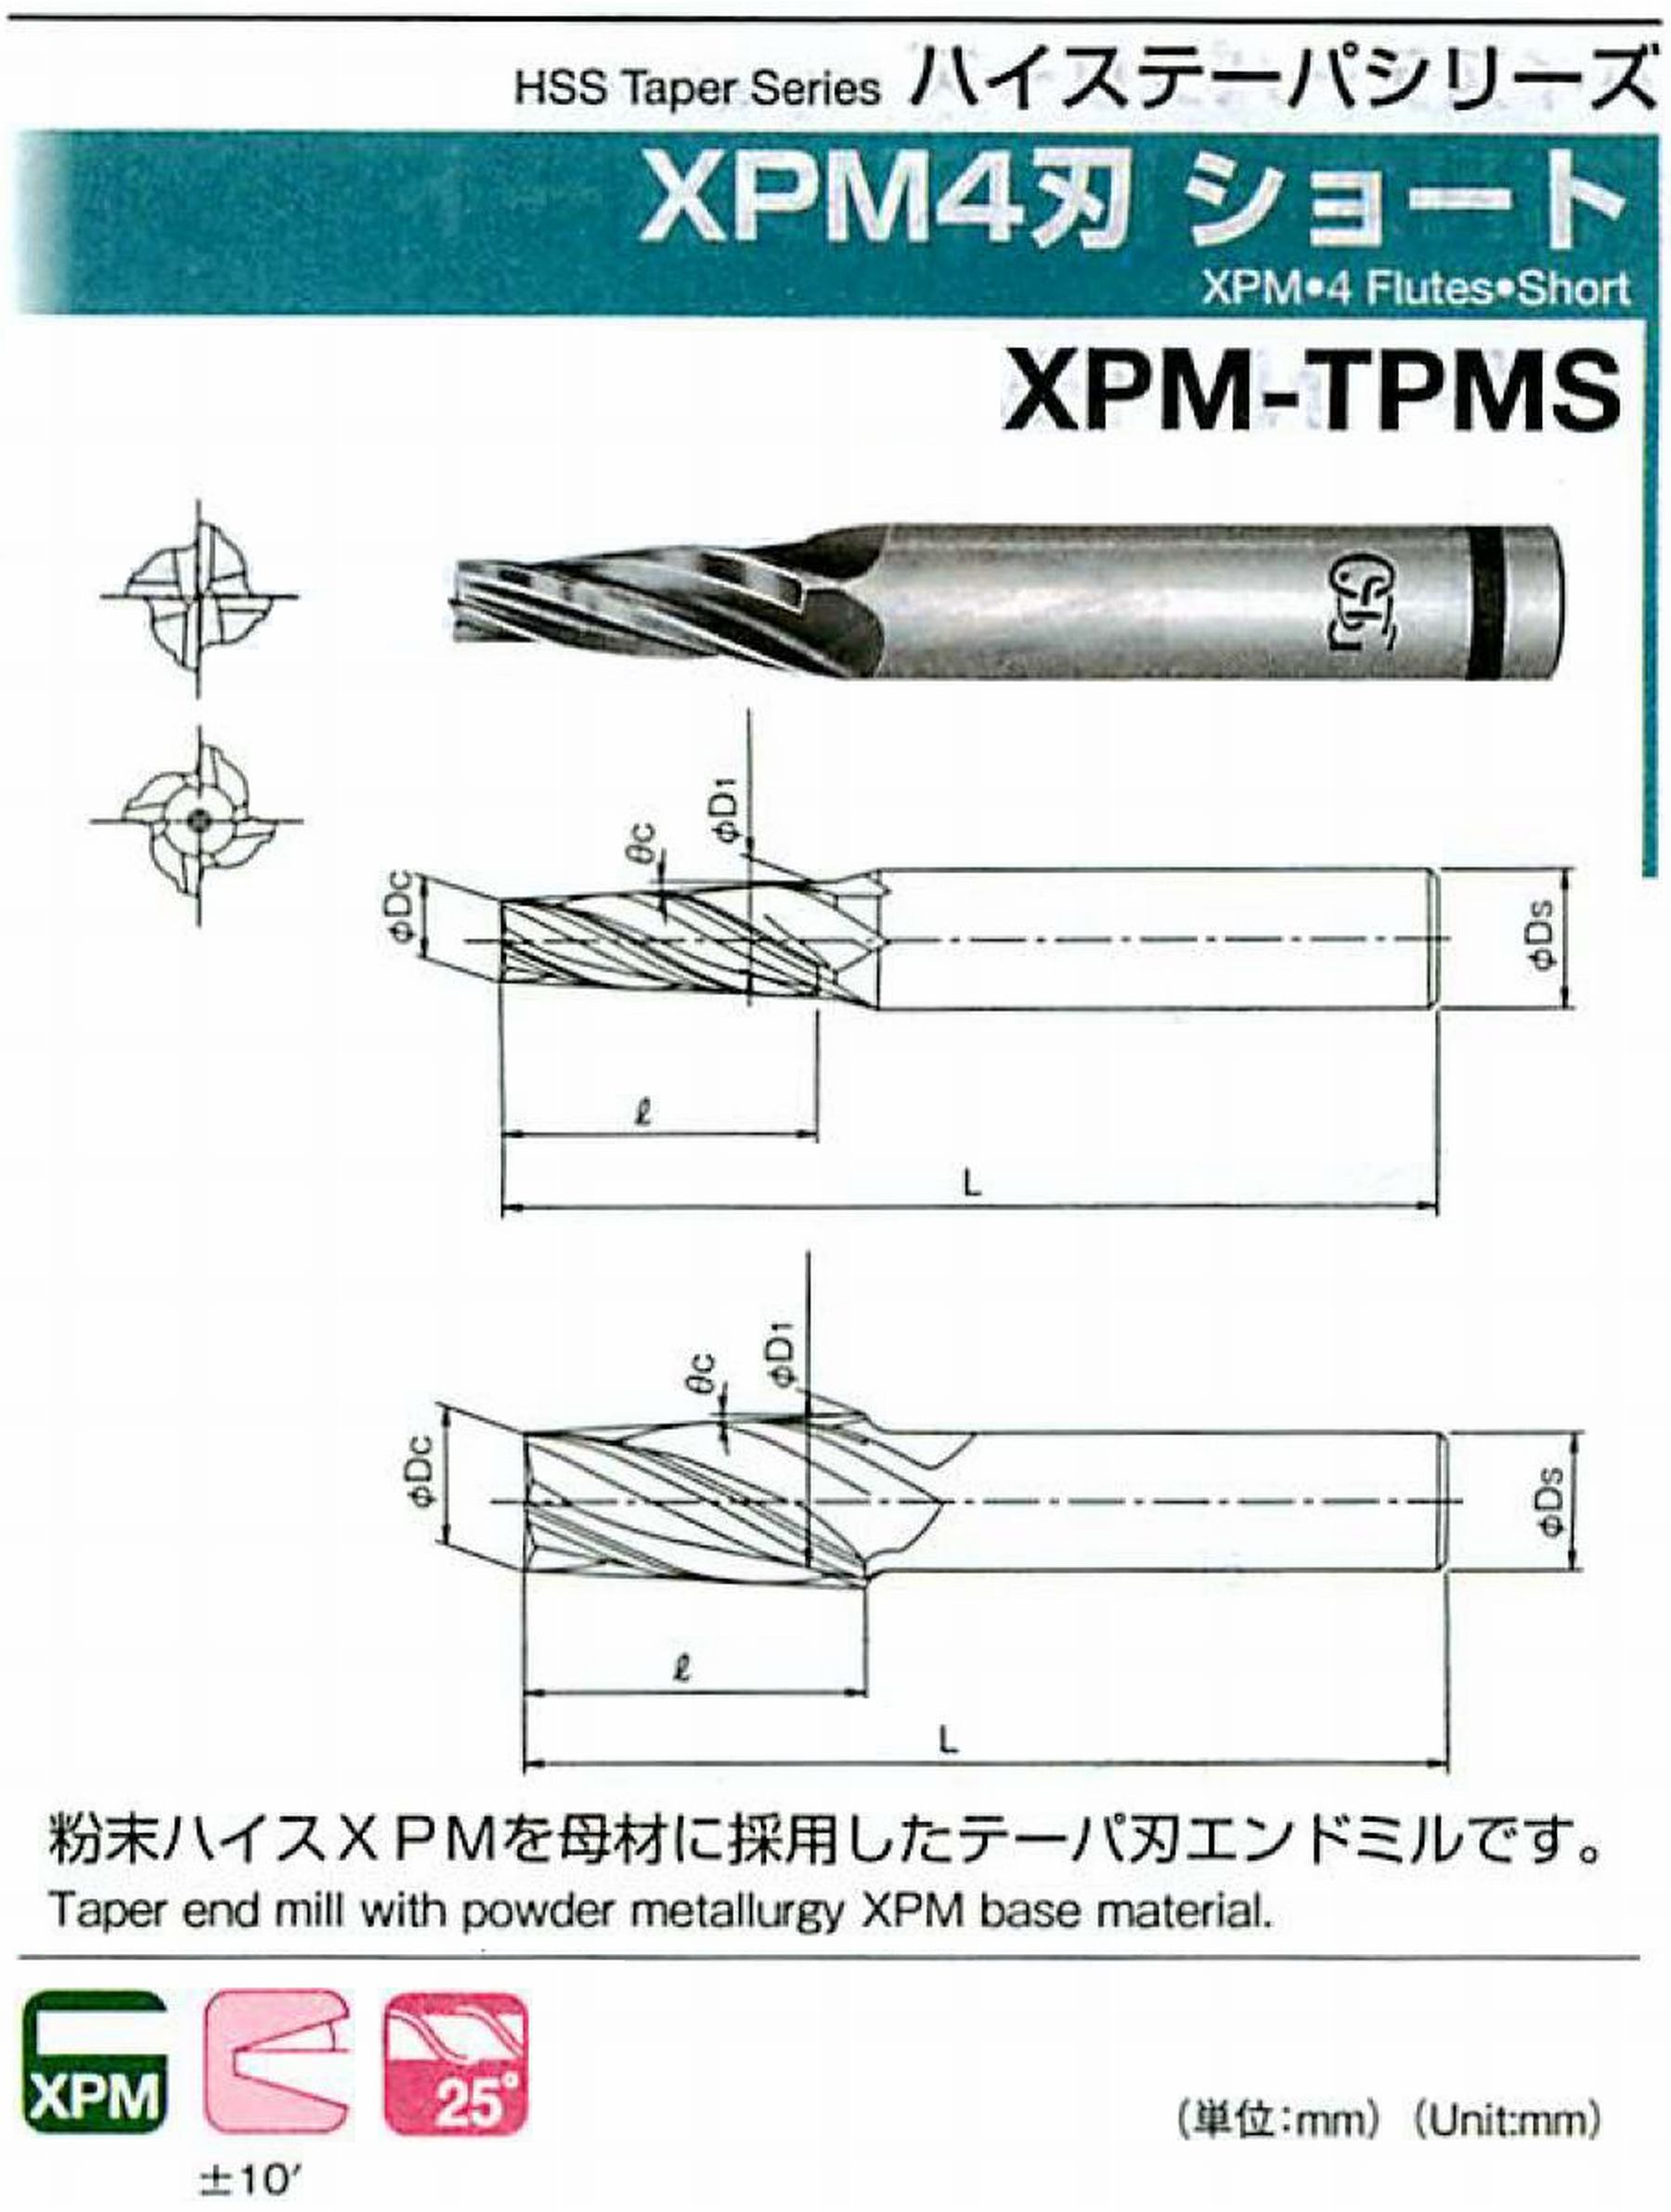 オーエスジー/OSG XPM4刃 ショート XPM-TPMS 外径×刃部テーパ半角10×1.5°全長79 刃長22 シャンク径12mm 大端径11.15